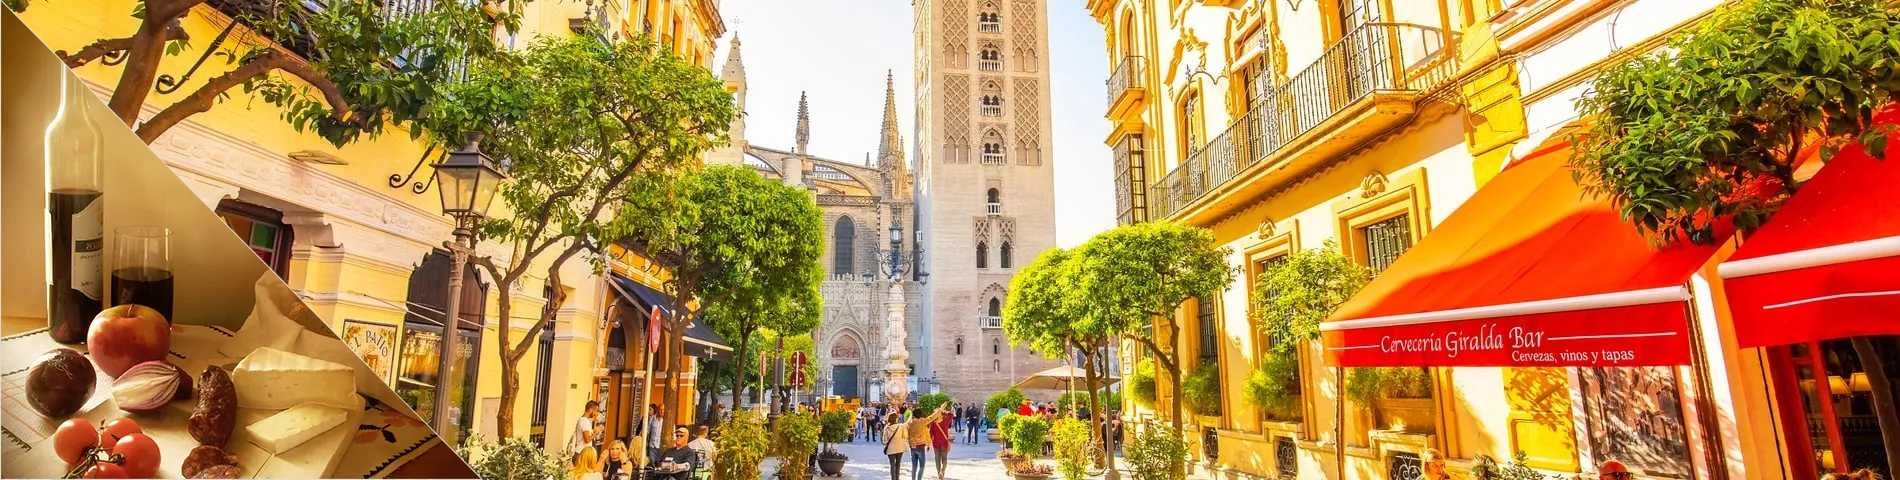 Sevilla - Spanish & Culture